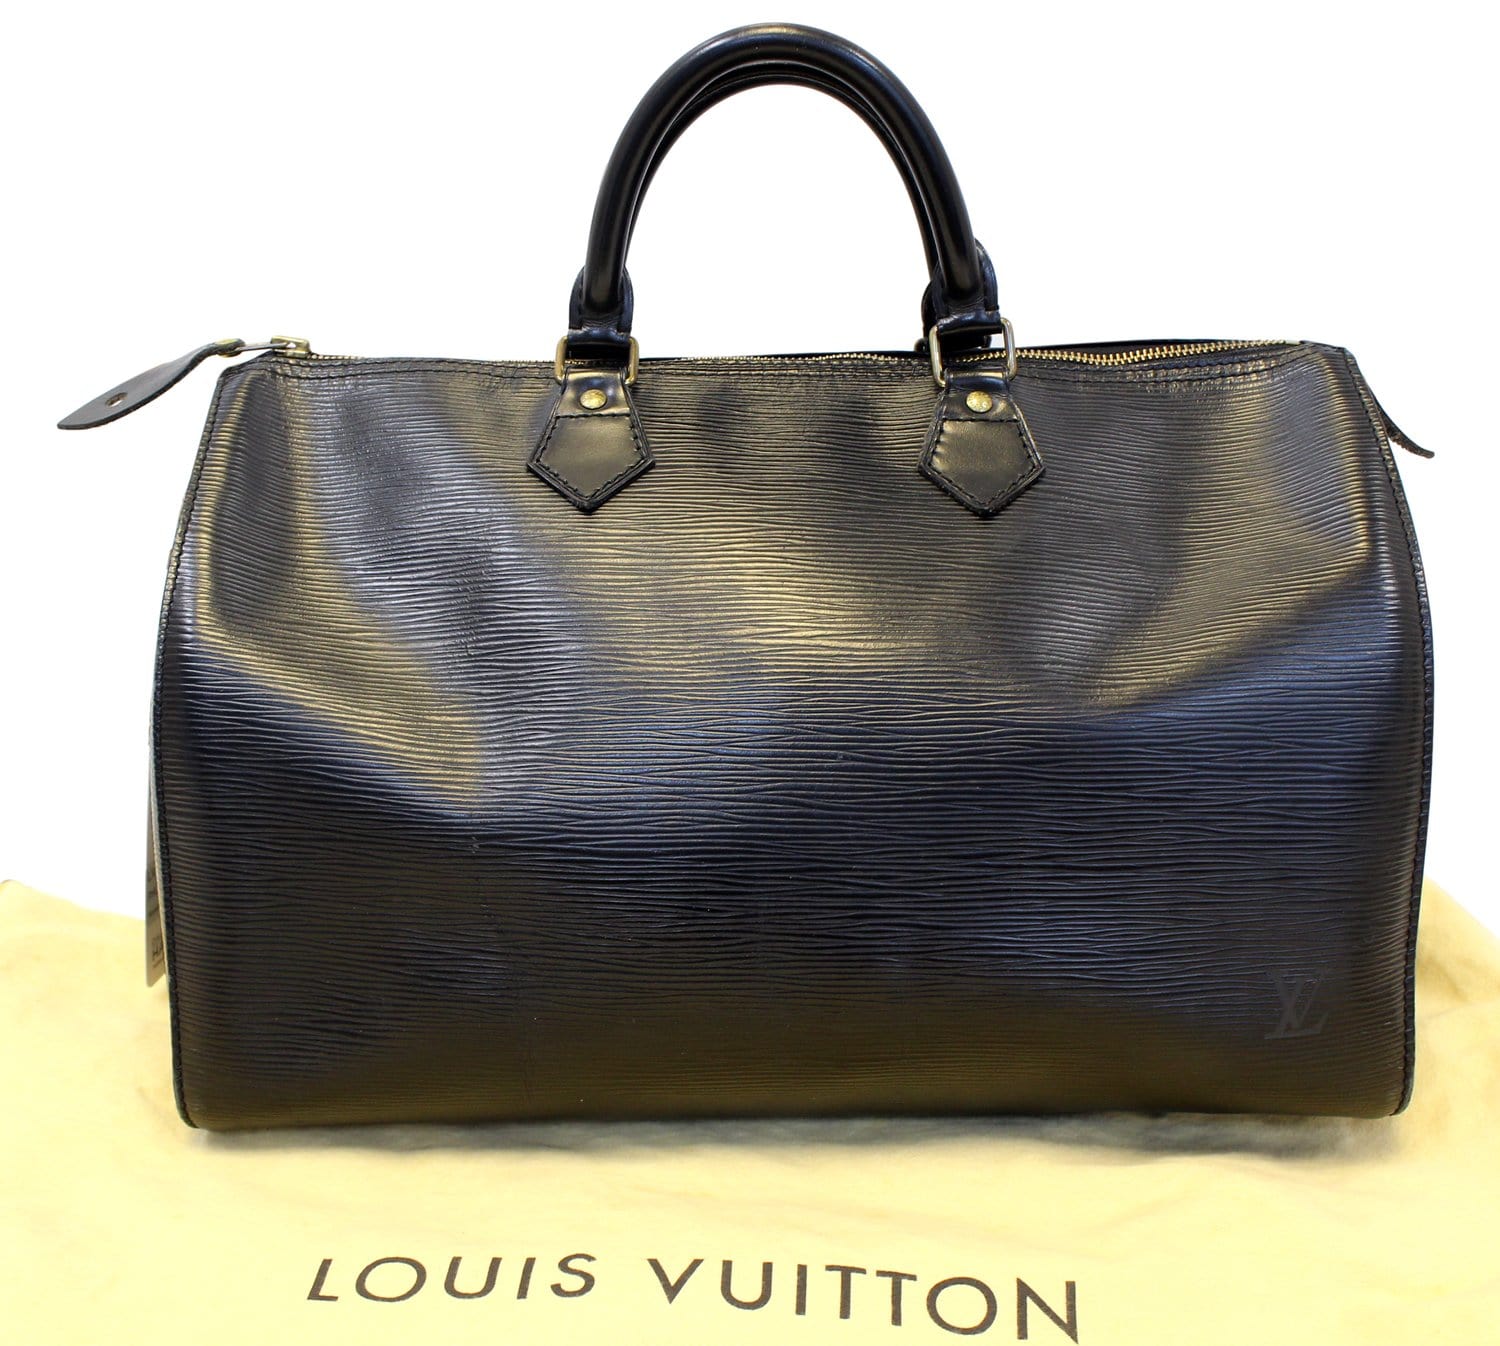 Louis Vuitton, Speedy 40 Epi Leather, signal red texture…